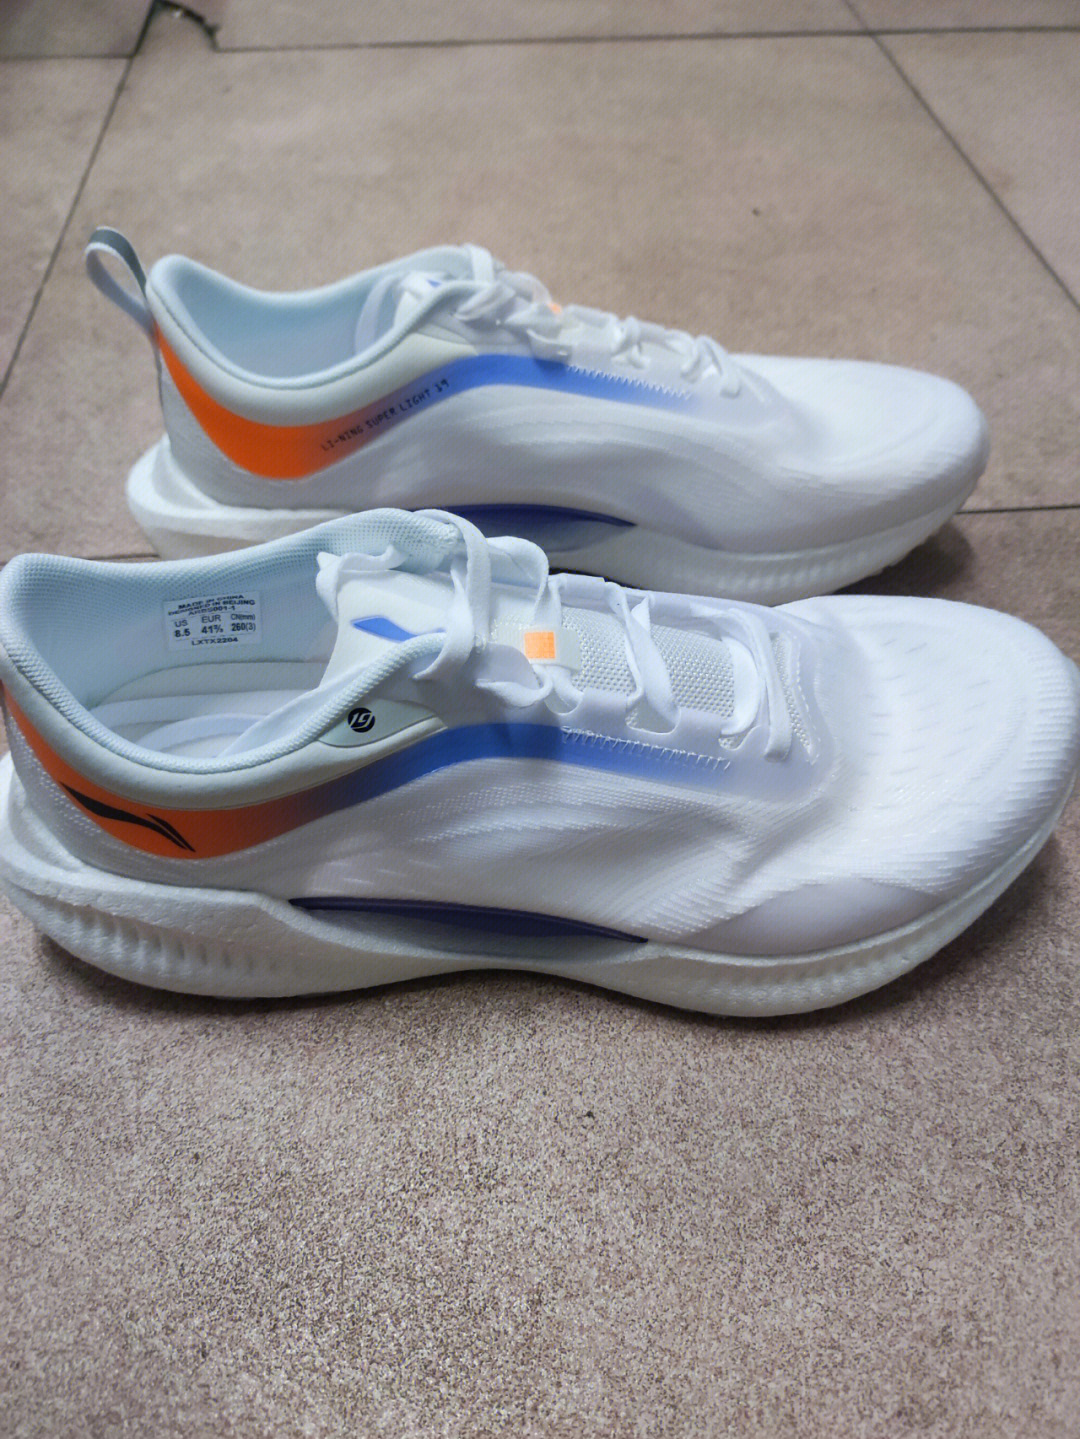 李宁跑鞋外观方面:鞋面轻薄且透气,大面积白色鞋身搭配蓝,橙色的脸